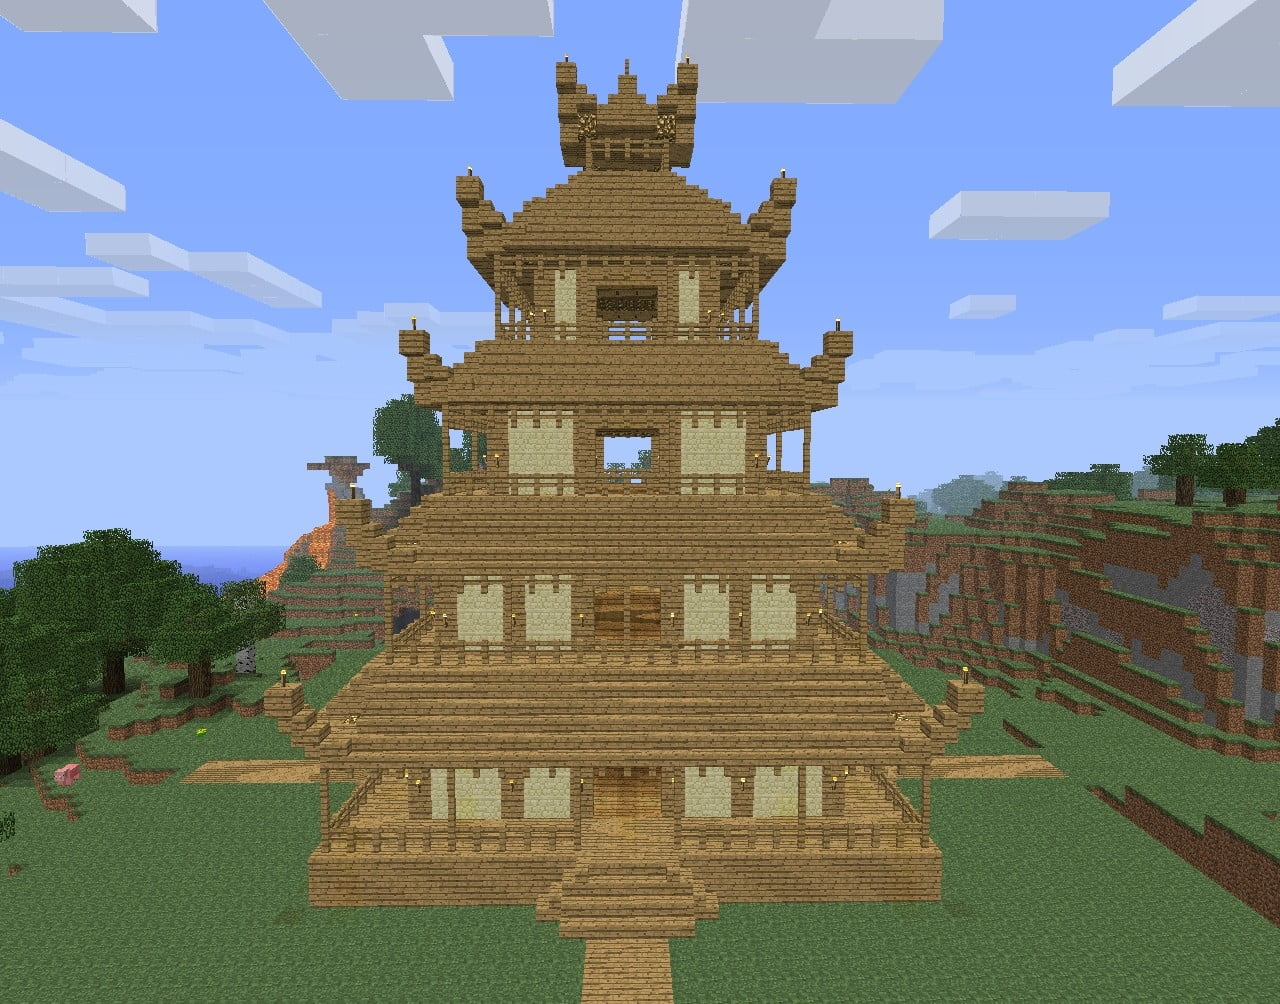 ᐅ Großer Chinesischer Tempel in Minecraft bauen 